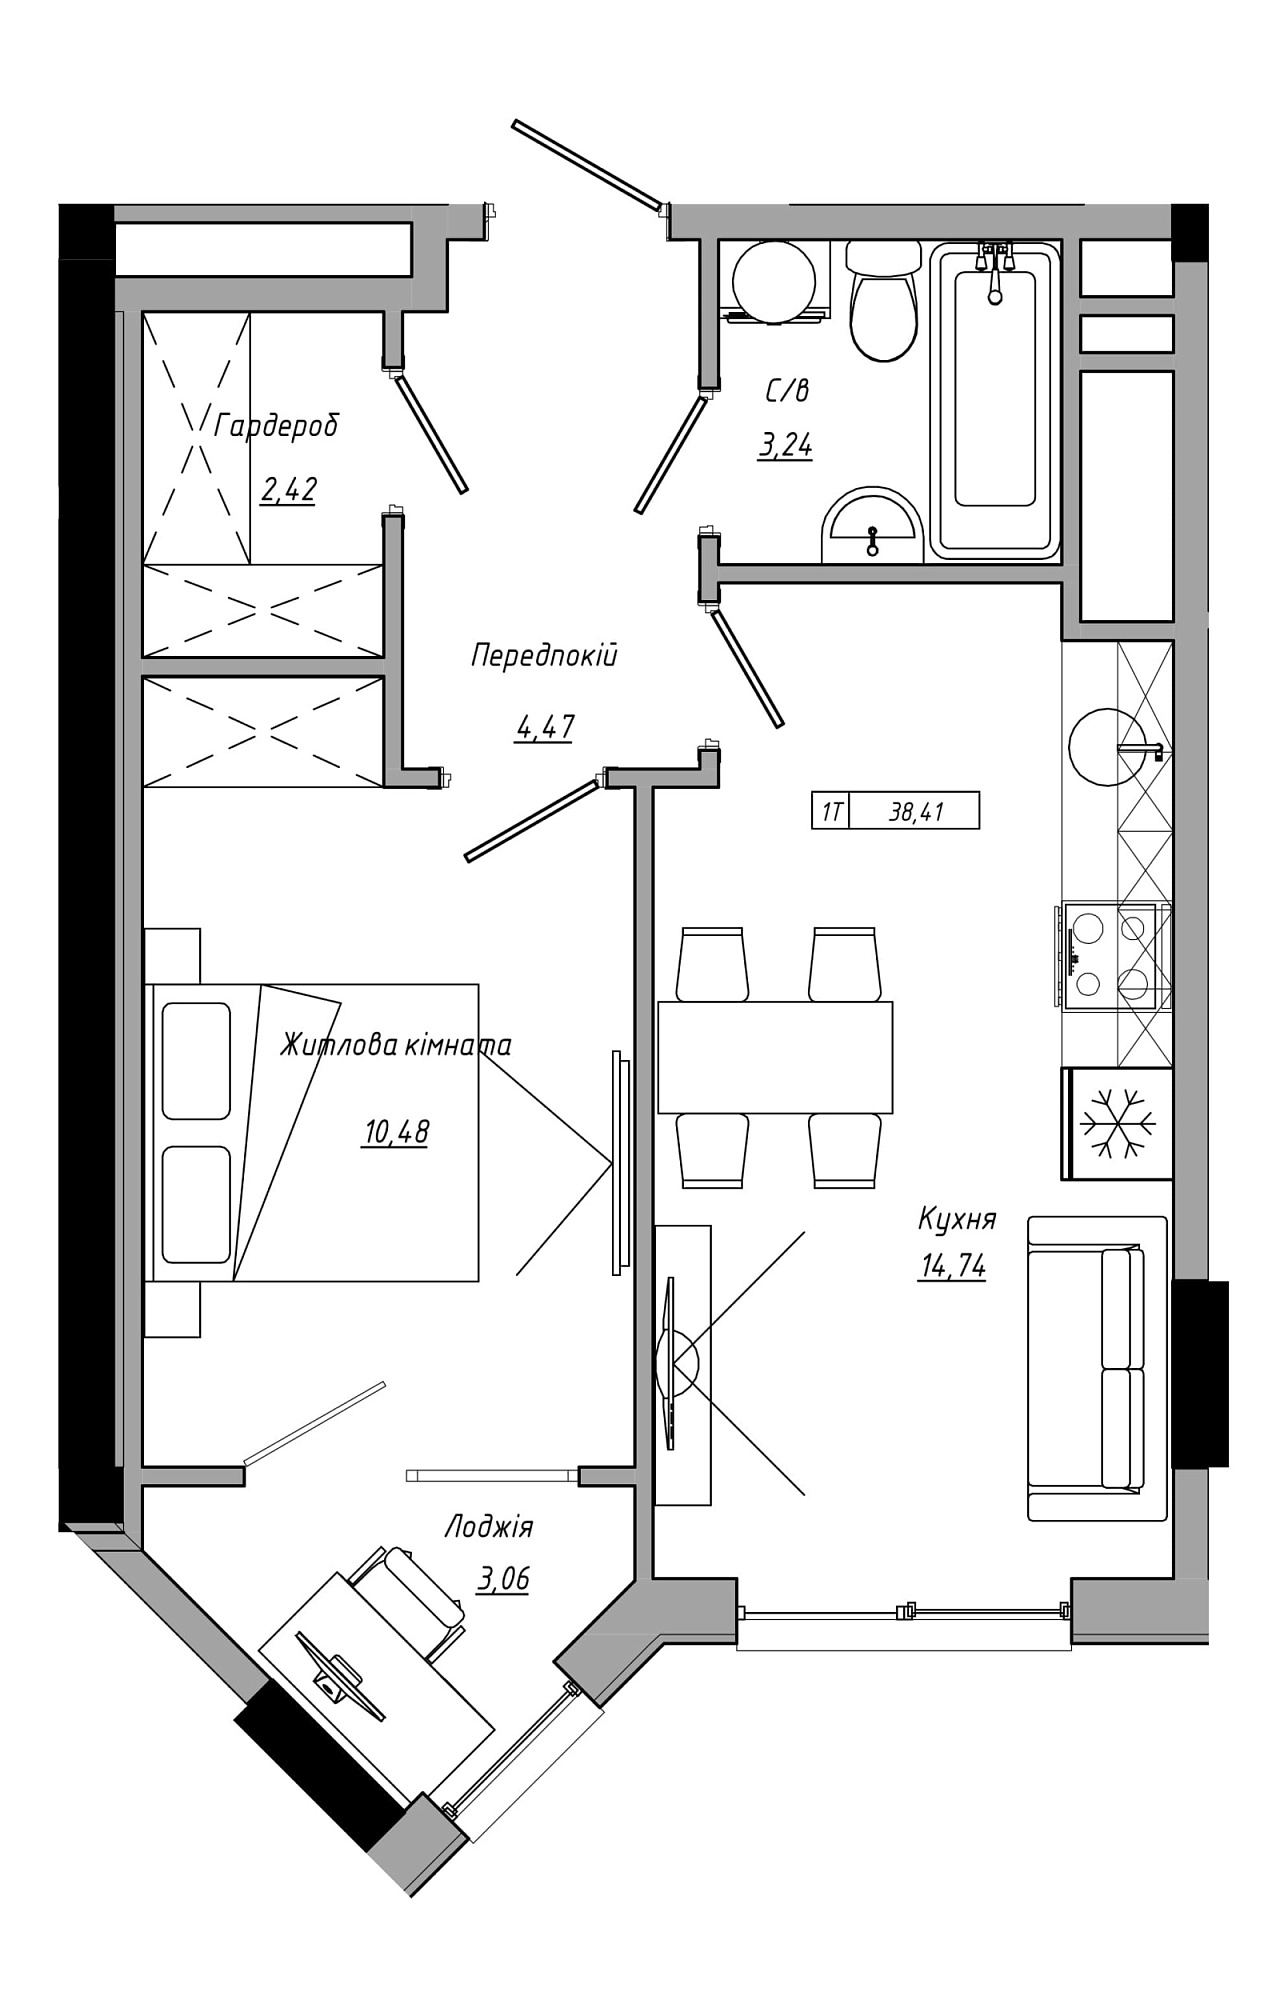 Планировка 1-к квартира площей 38.41м2, AB-21-13/00122.